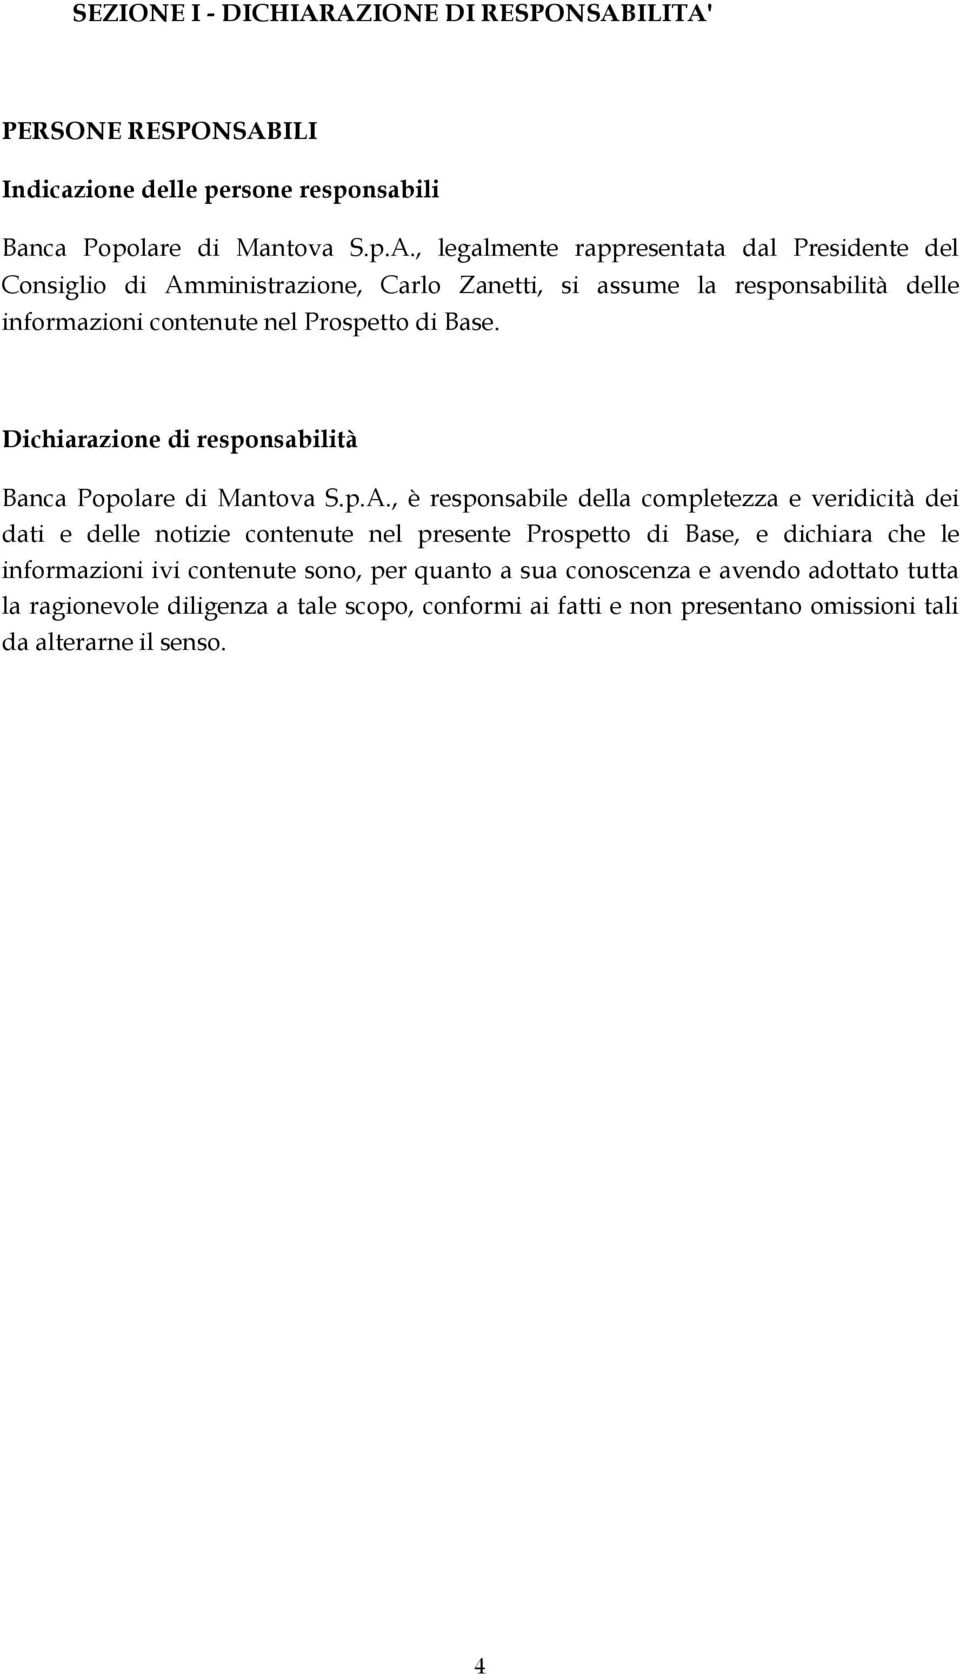 Dichiarazione di responsabilità Banca Popolare di Mantova S.p.A.